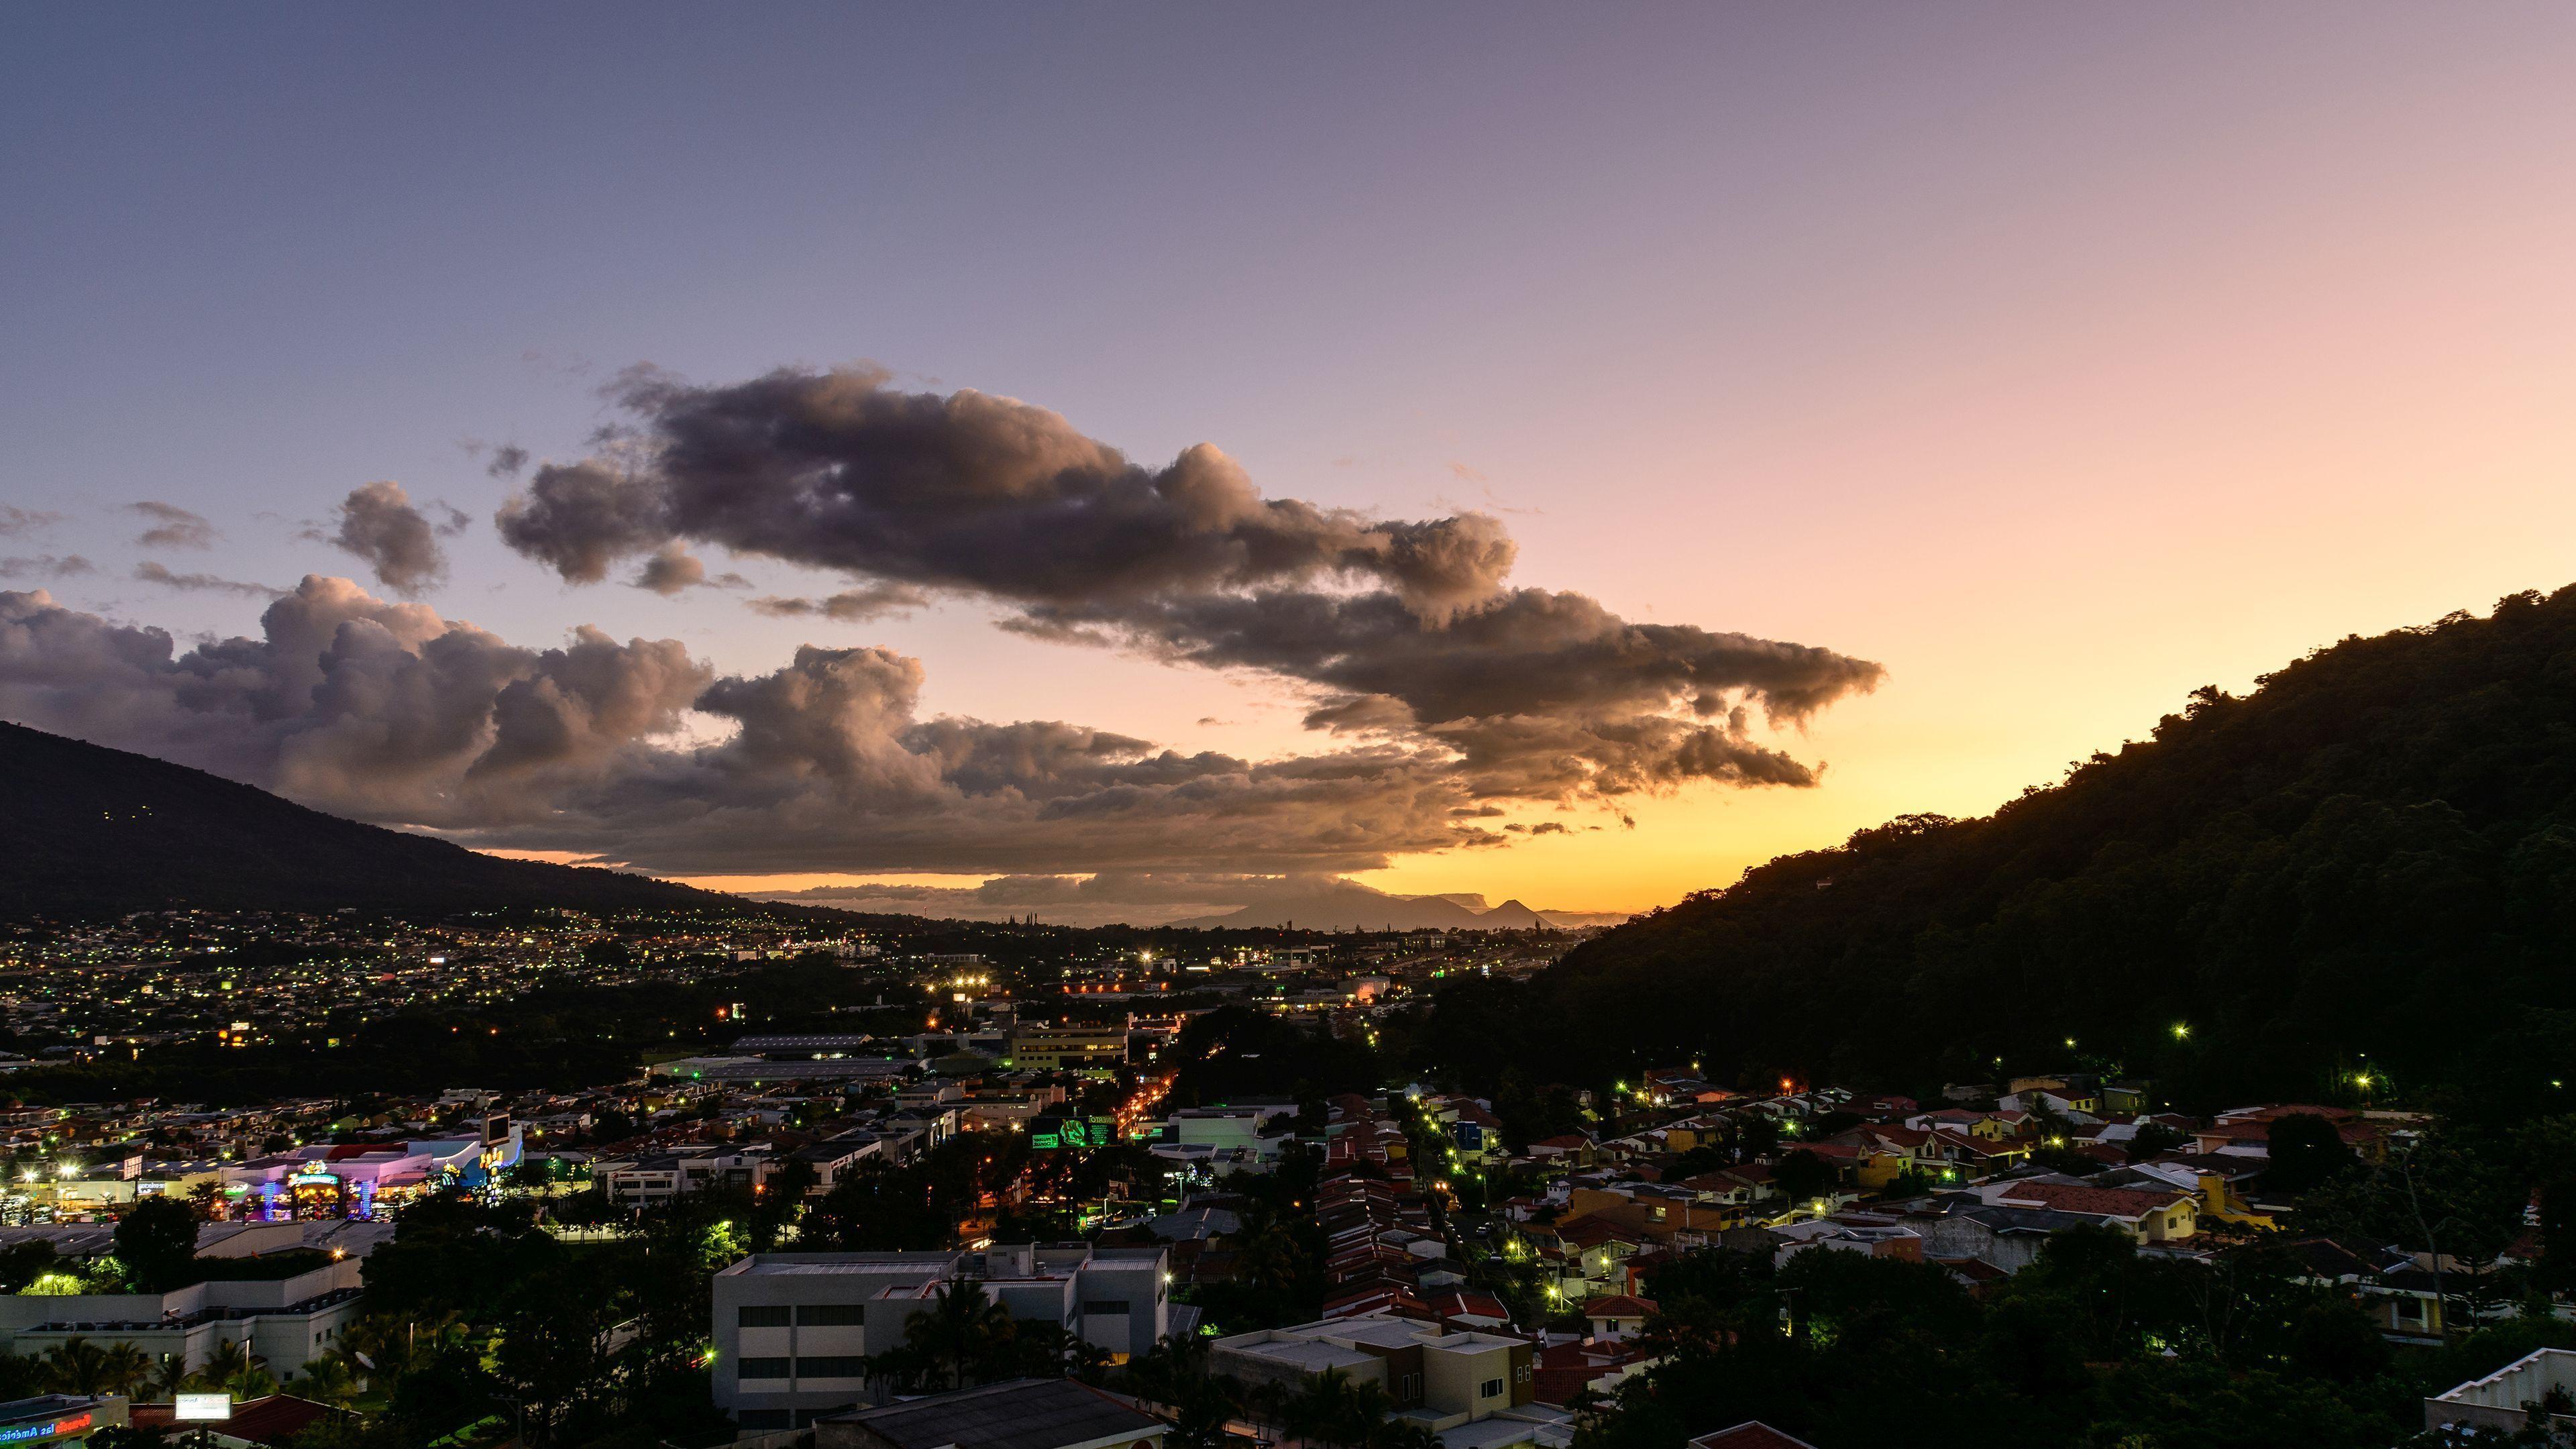 San Salvador after the sunset HD desktop wallpaper, Widescreen